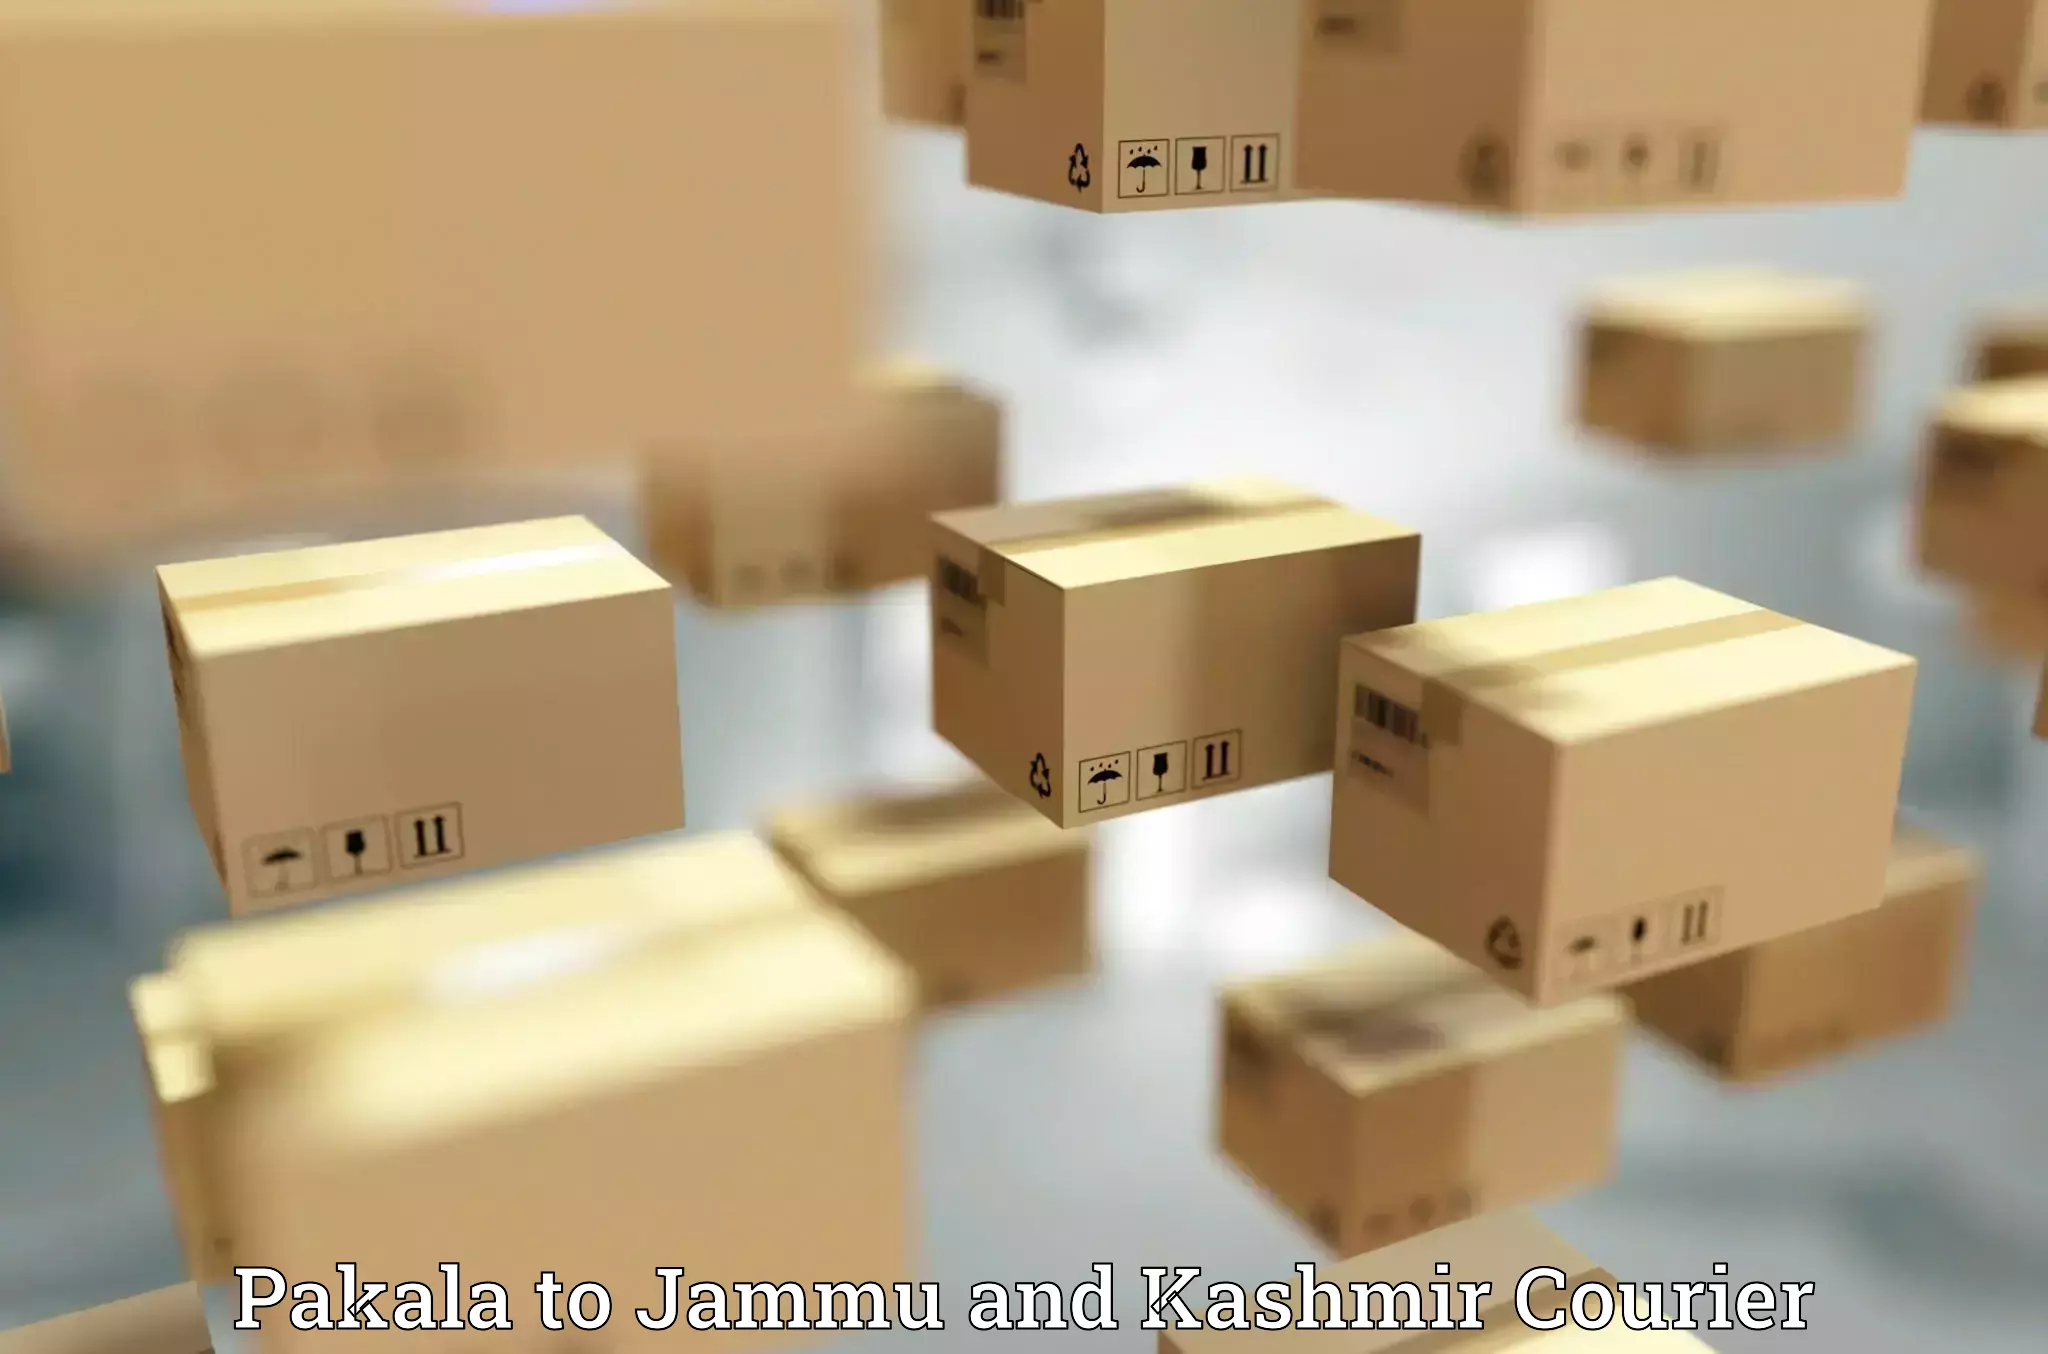 Express postal services Pakala to Jammu and Kashmir